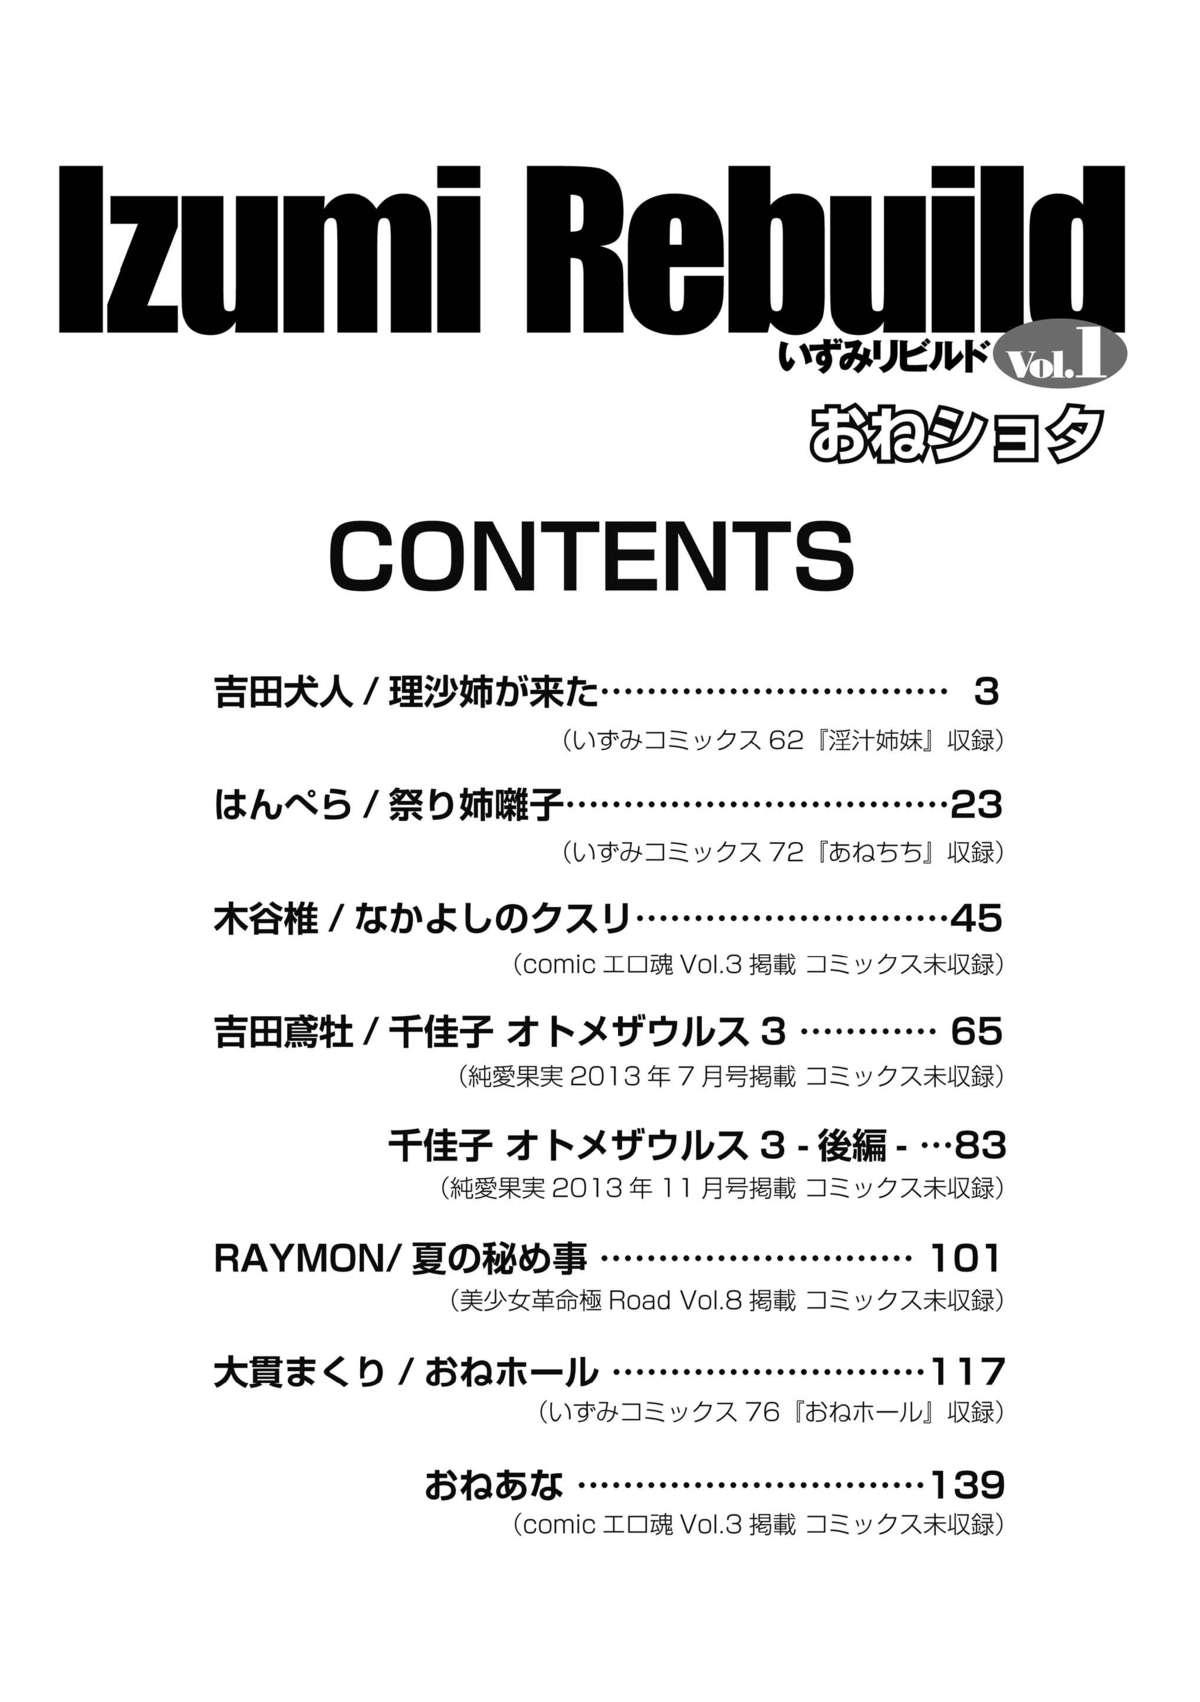 Gostoso Izumi Rebuild Vol. 1 Peludo - Picture 2